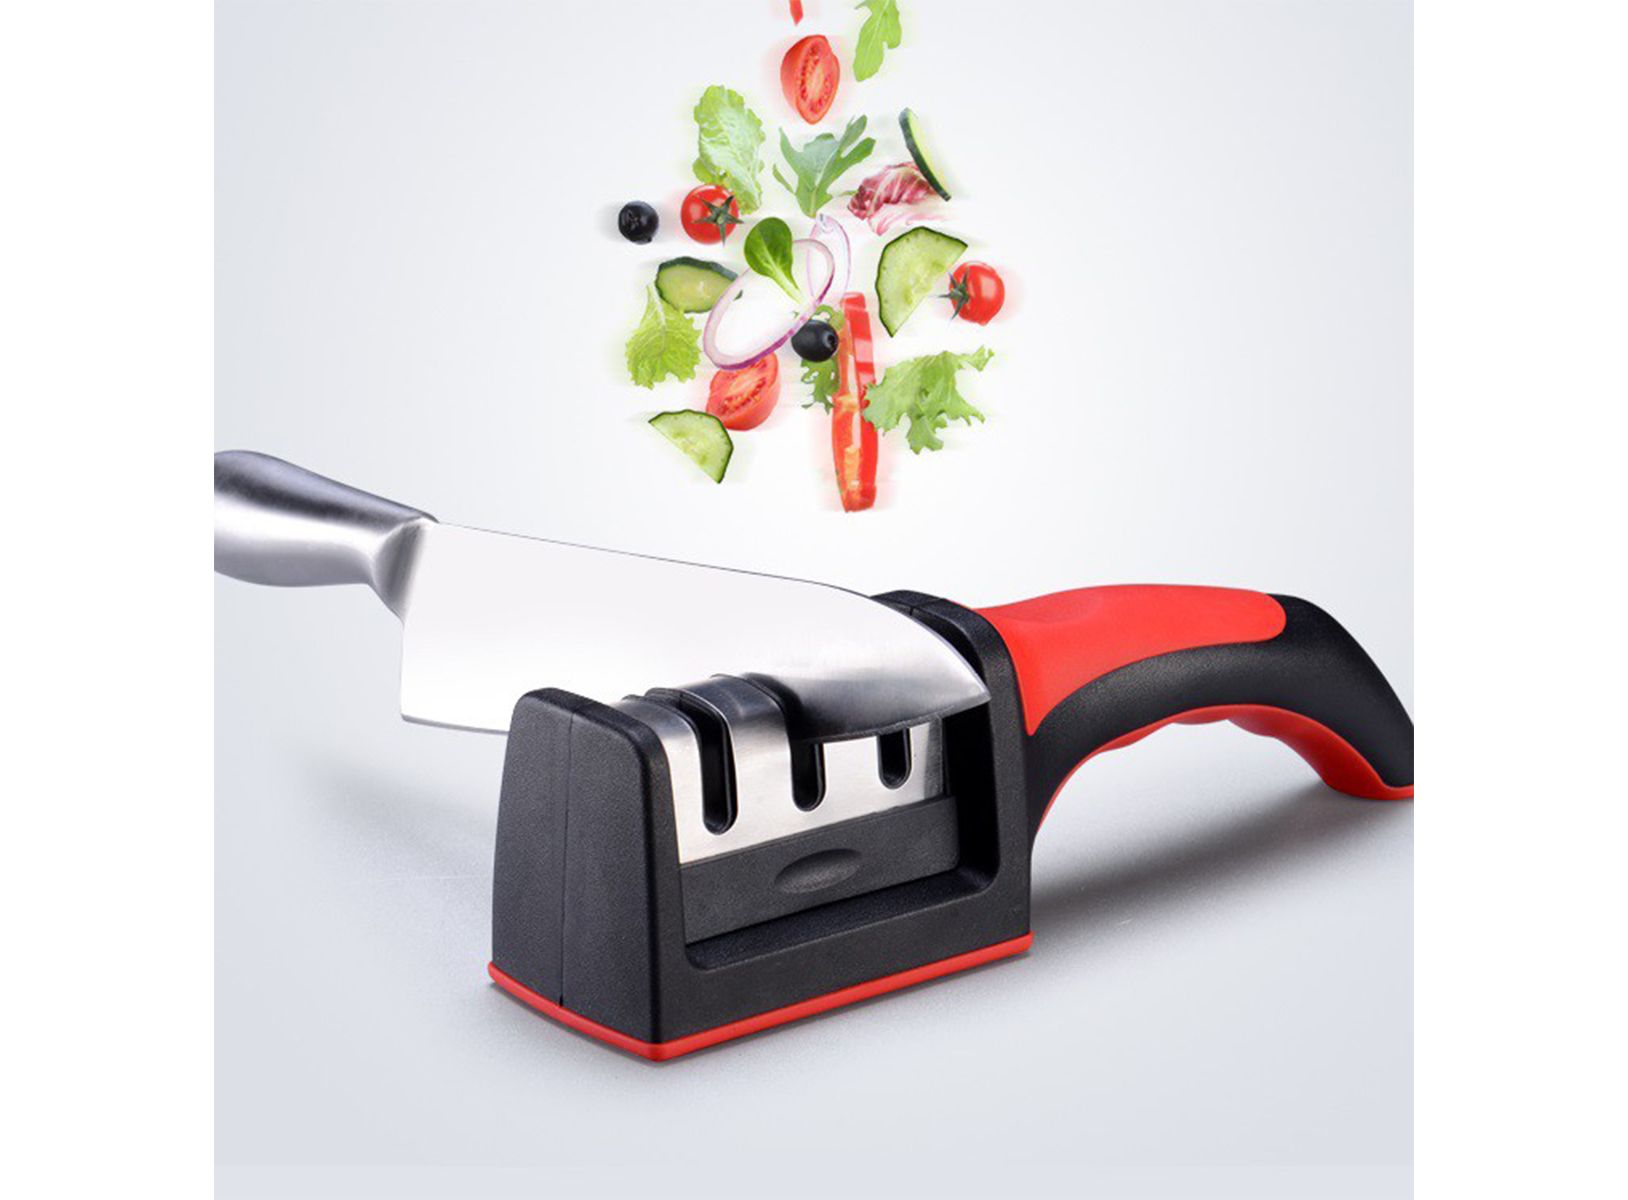 Afilador de cuchillos de cocina de 3 etapas, herramienta profesional de  afilado de cuchillos que ayuda a reparar, restaurar y pulir cuchillas